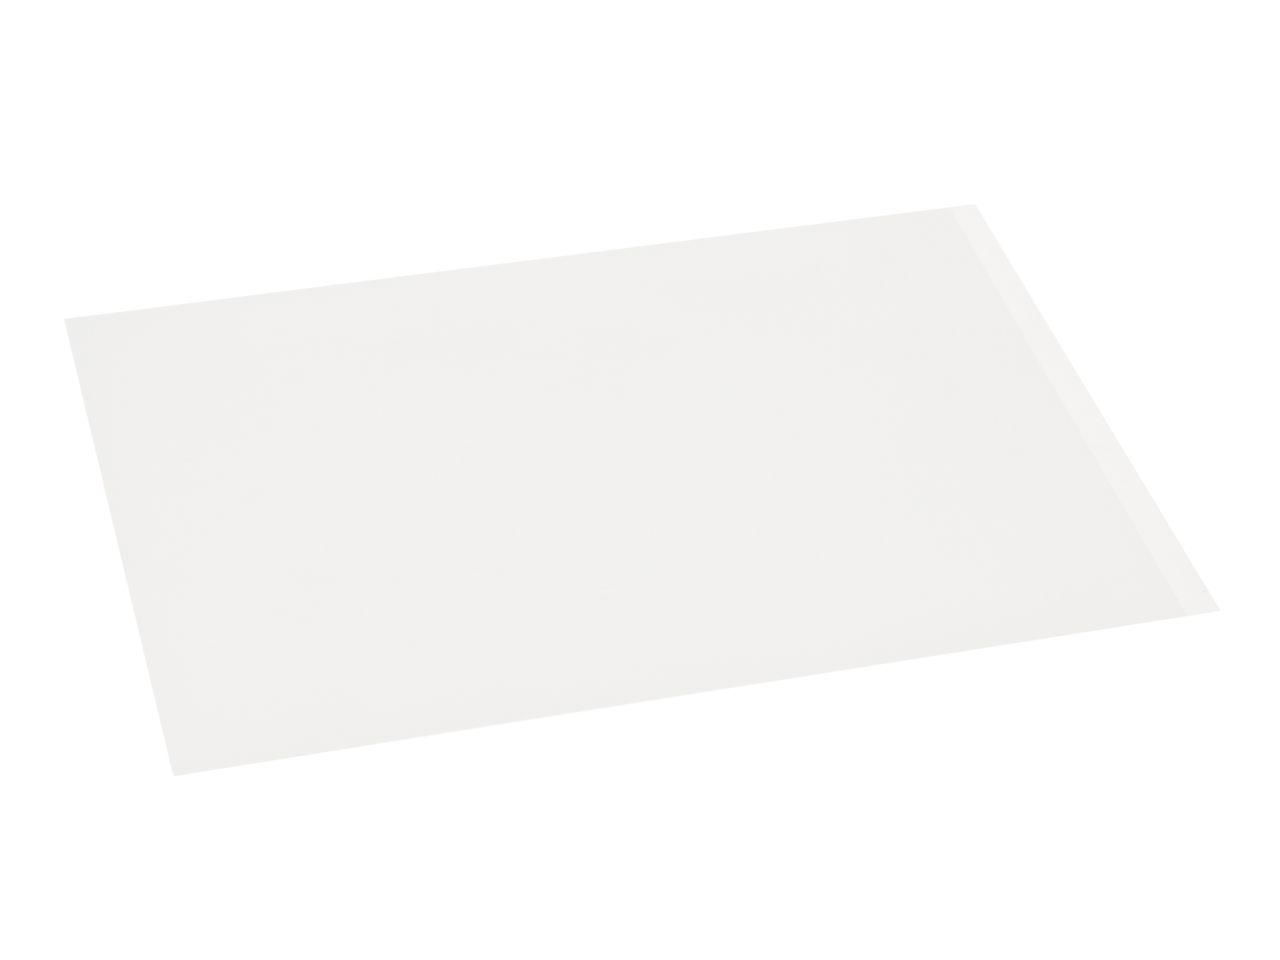 Transferfolie: Blanko, 2 Stück à 28 x 19 cm